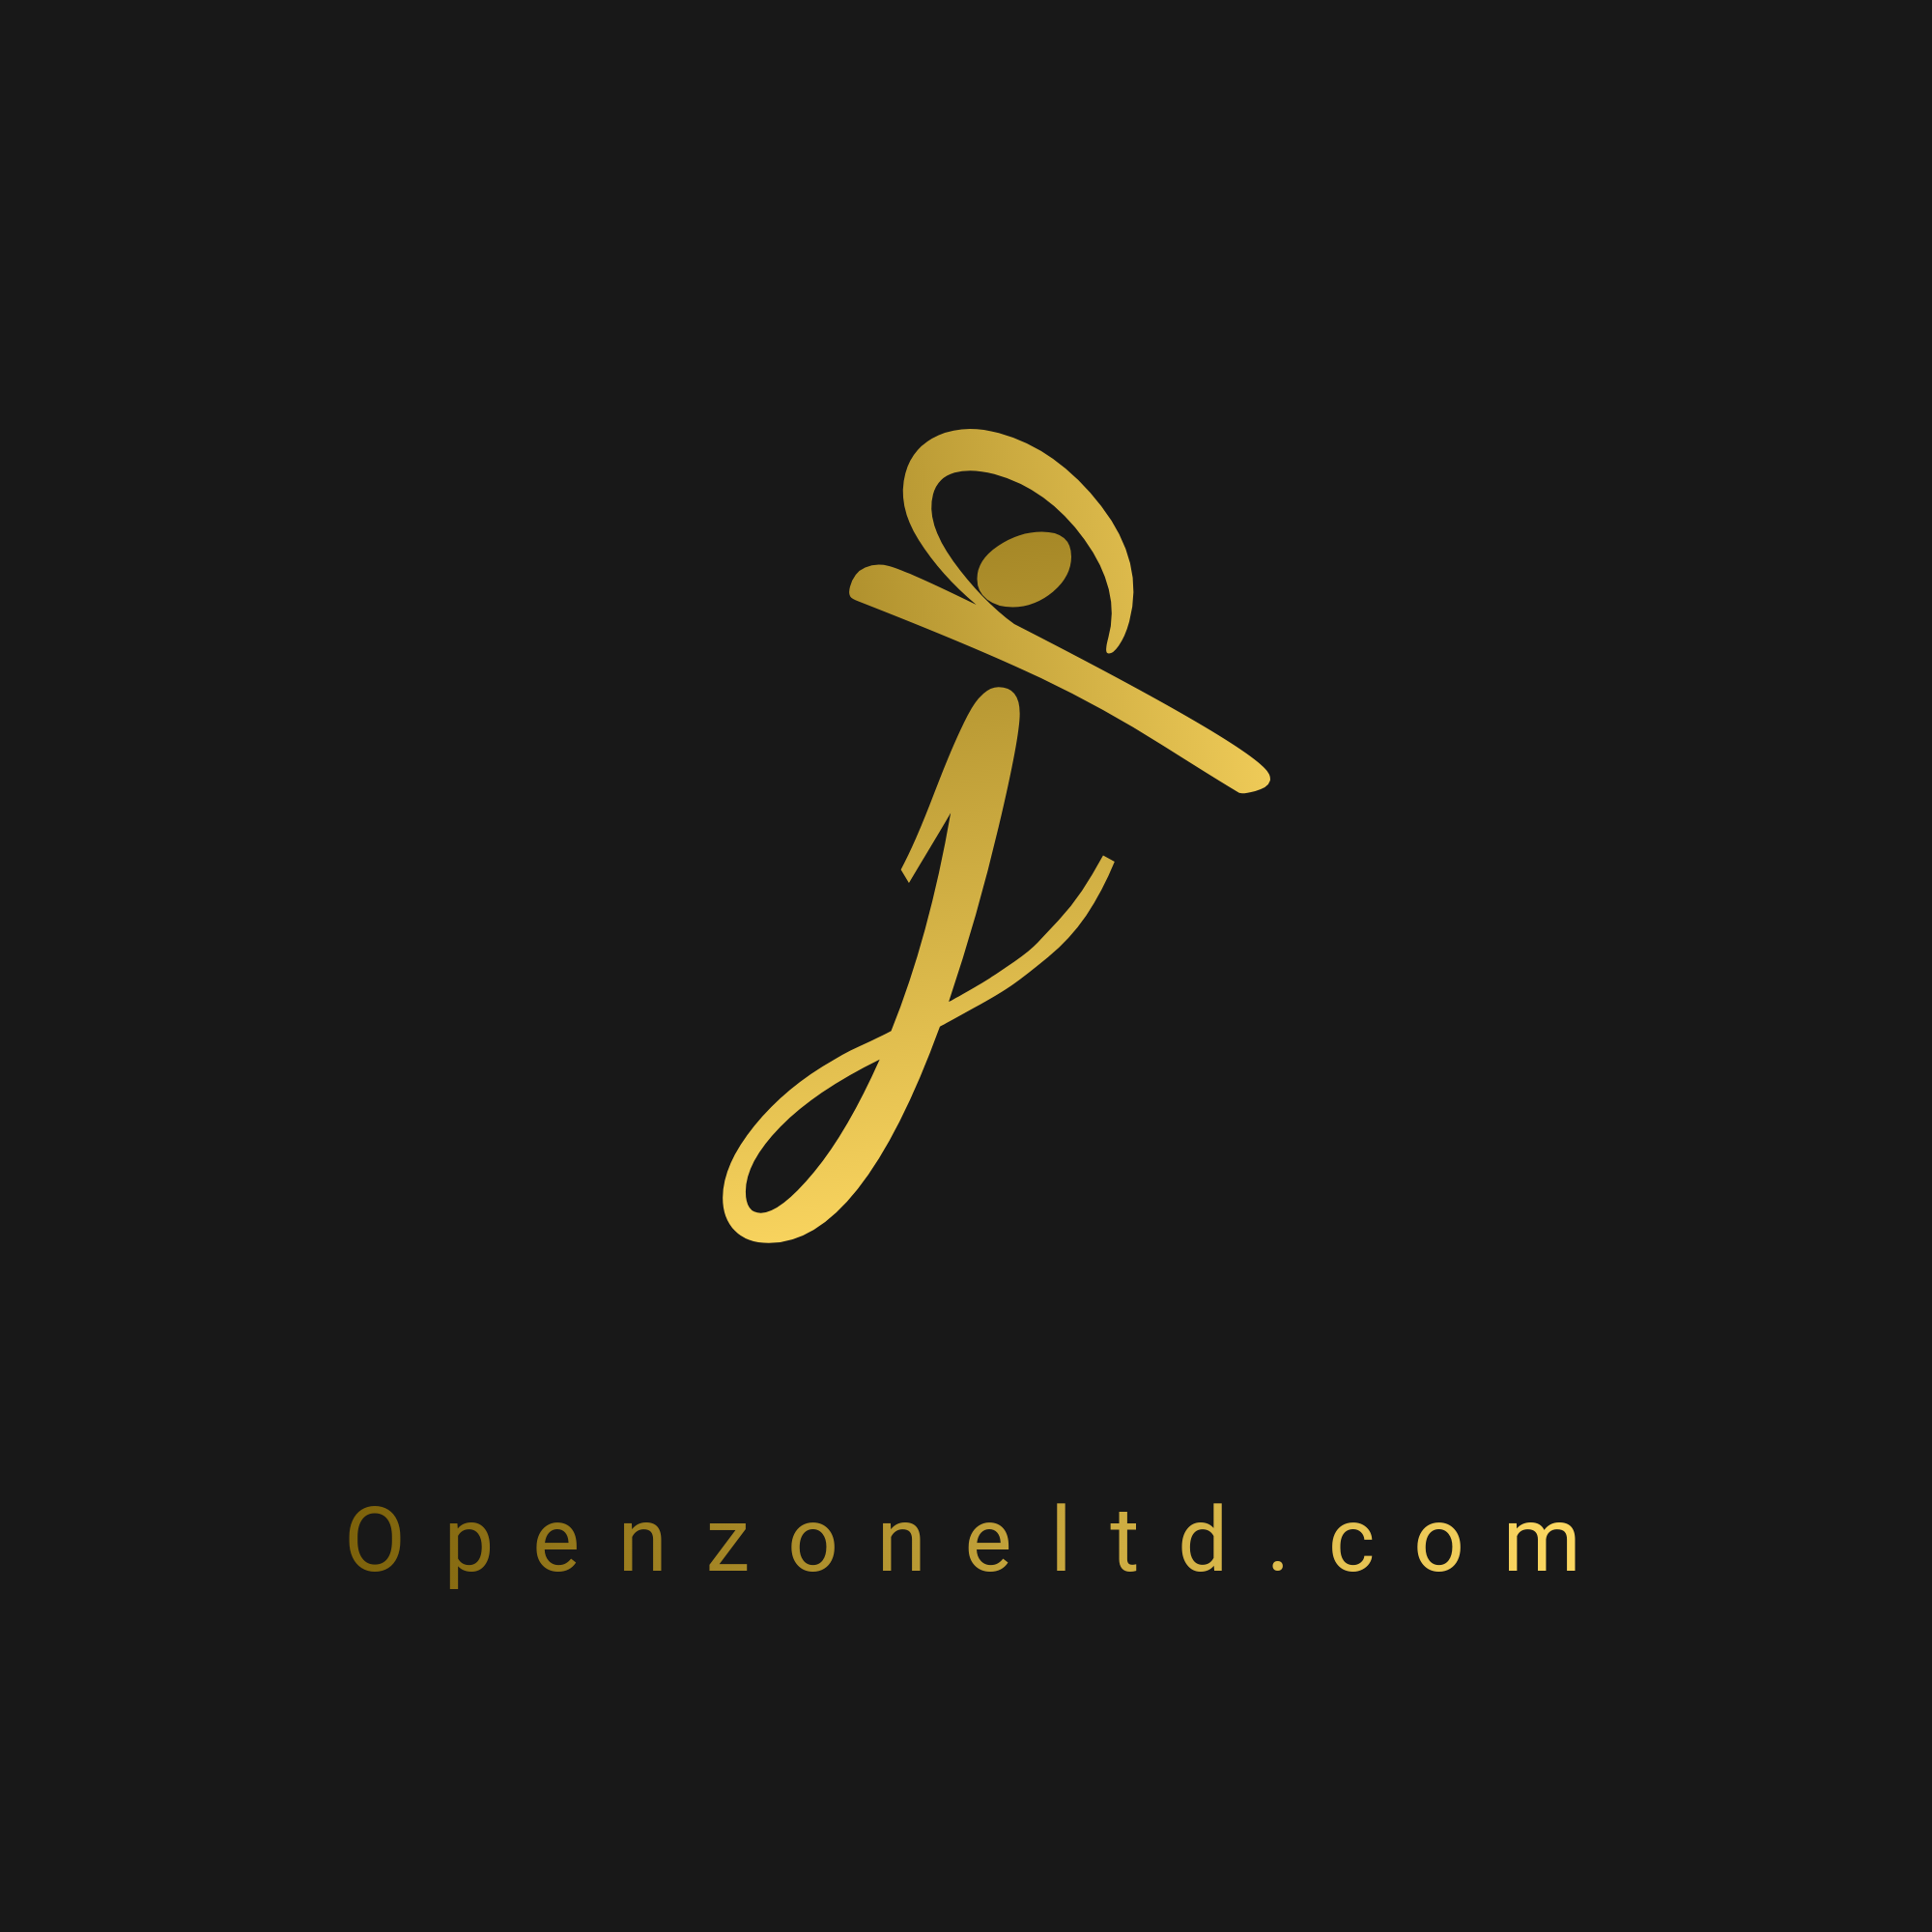 Openzoneltd Logo